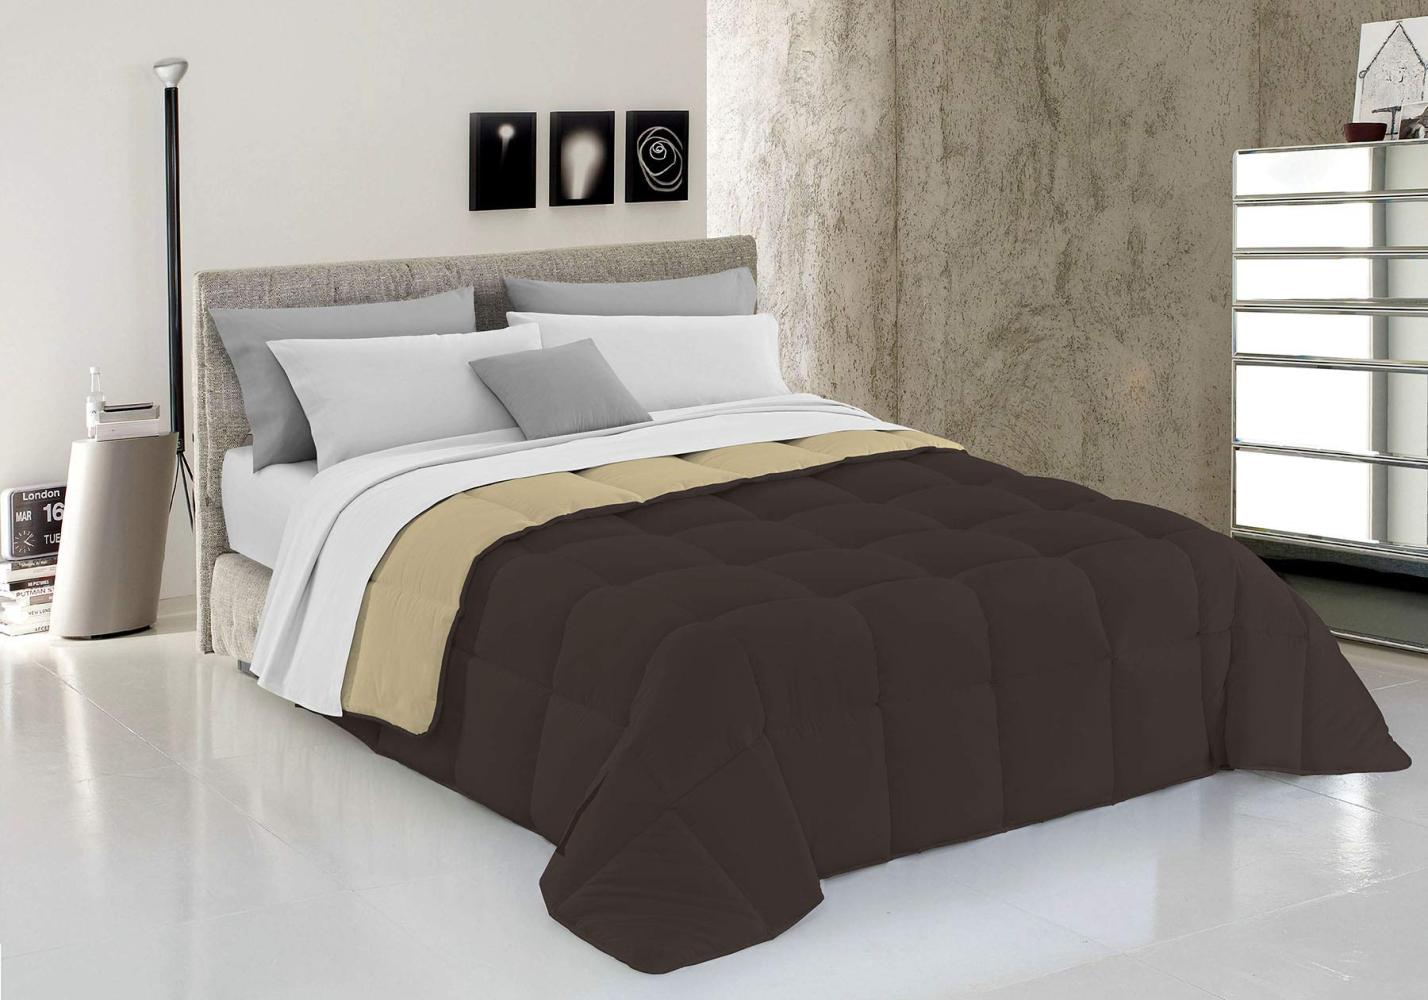 Italian Bed Linen Wintersteppdecke Elegant, Mikrofaser, Braun/Creme, 170x260cm Bild 1